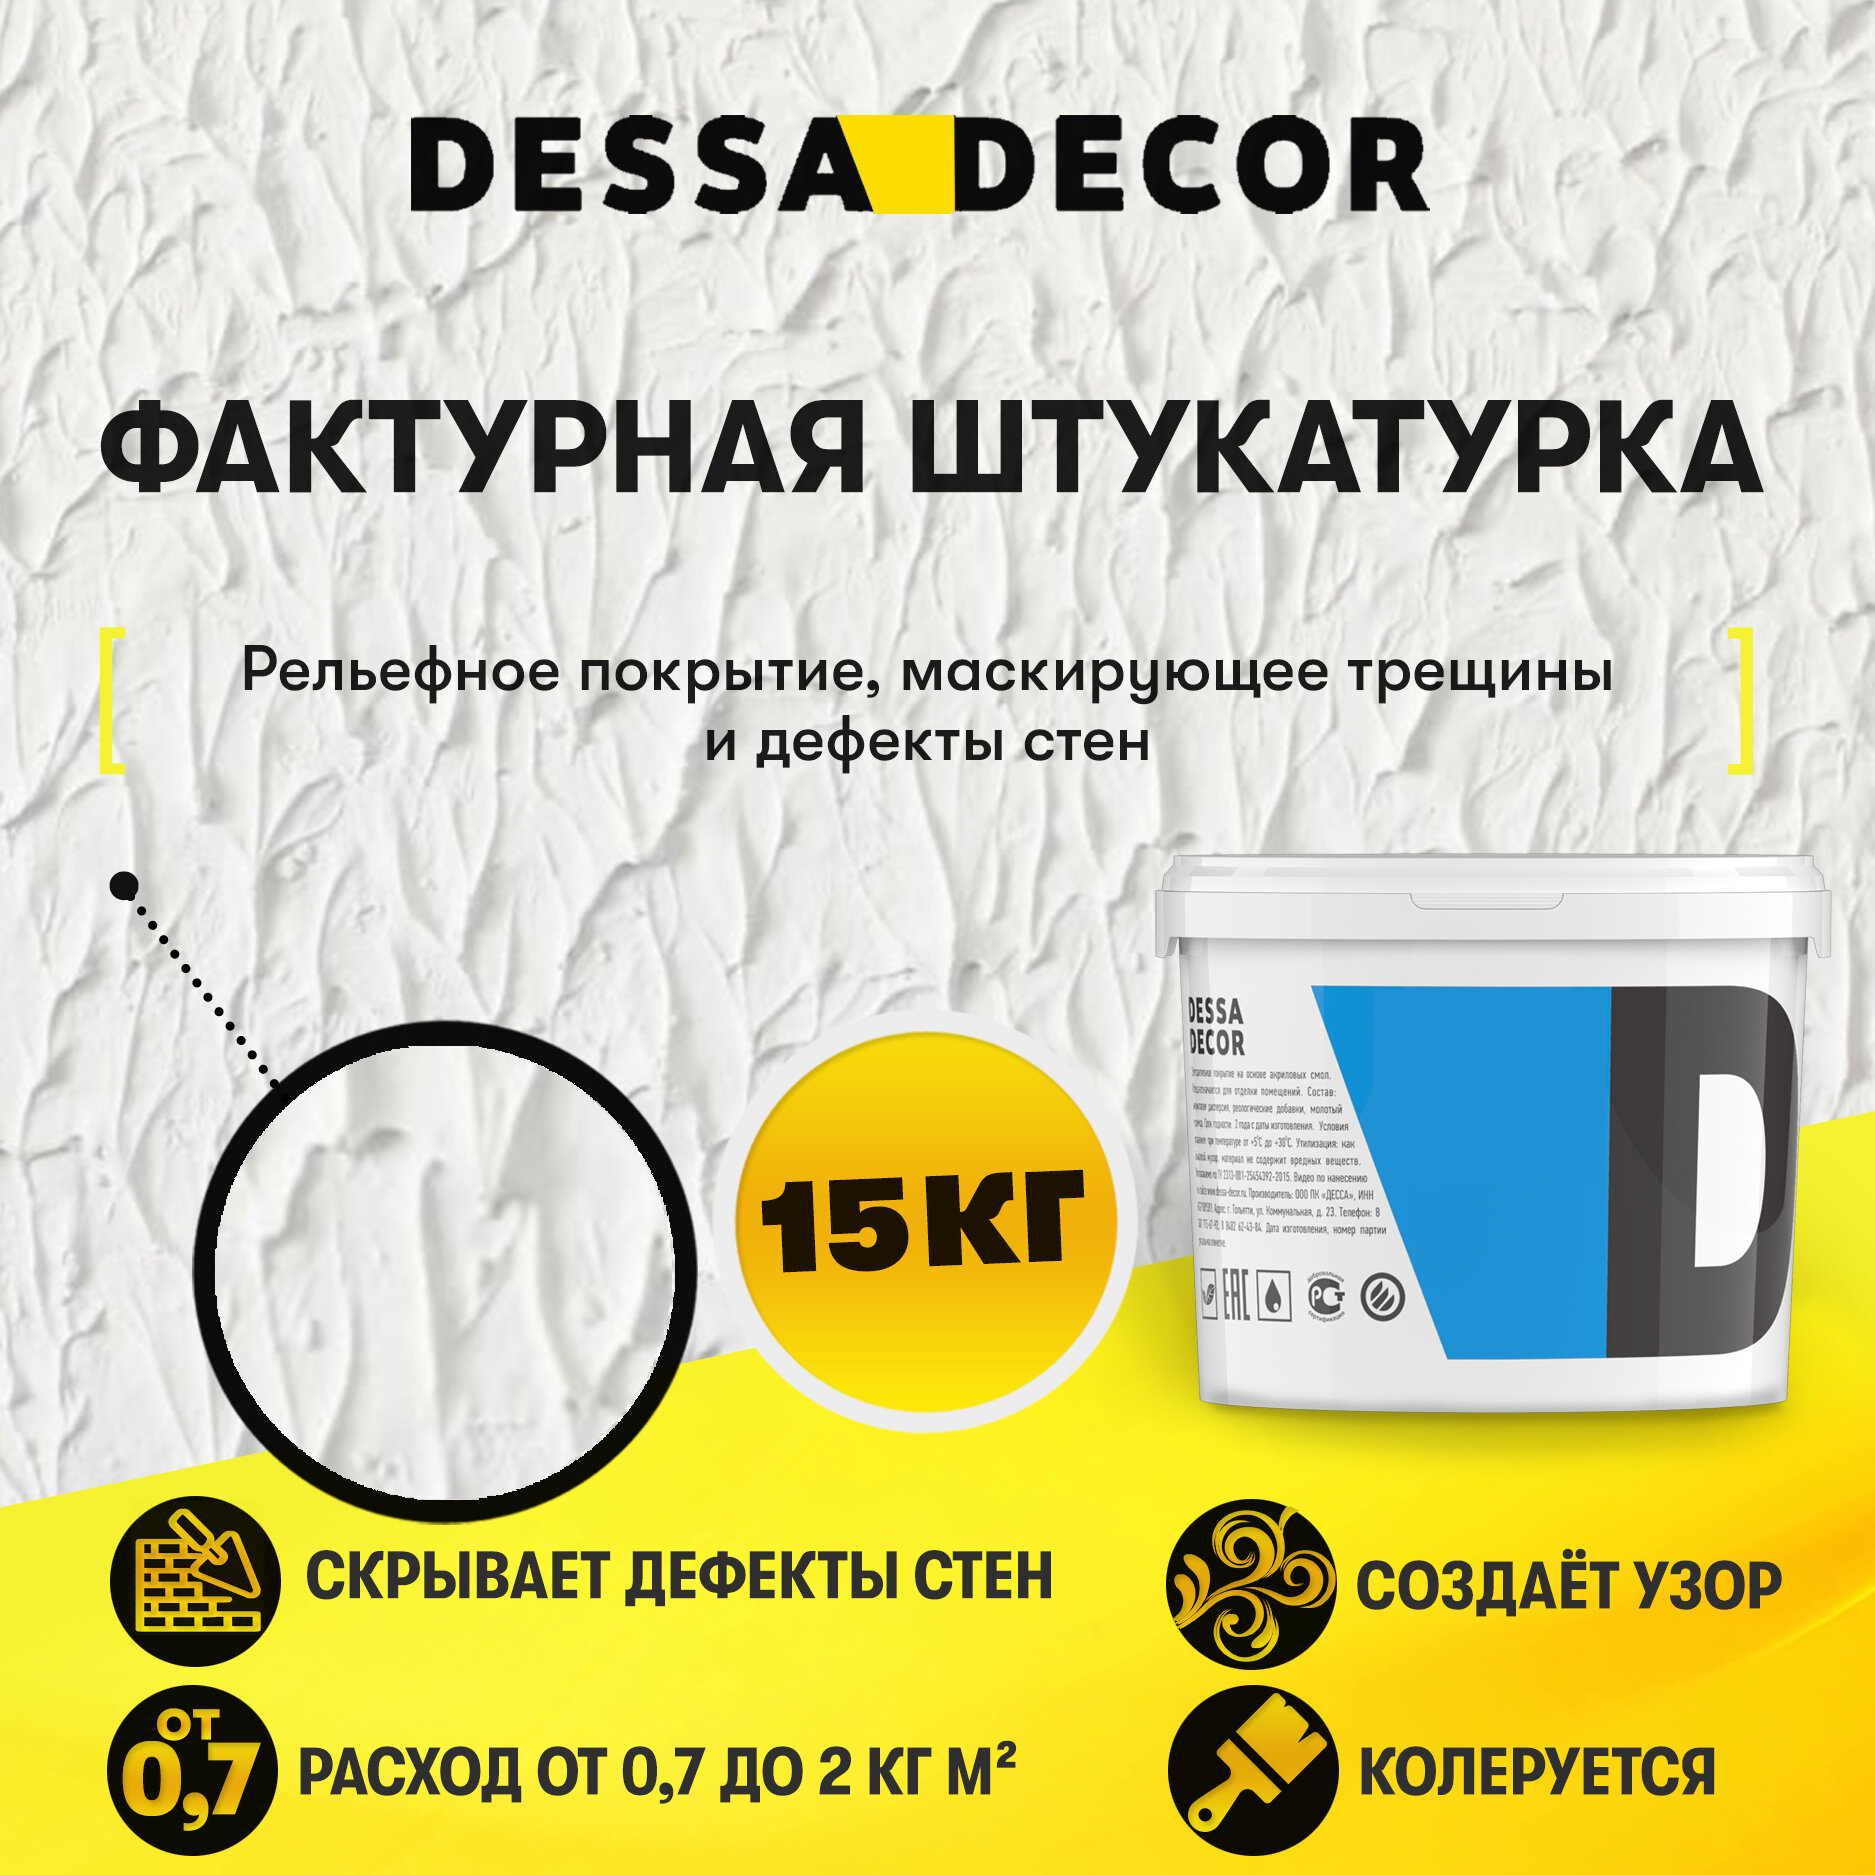 Декоративная штукатурка DESSA DECOR Фактурная 15 кг, универсальная для декоративной отделки стен